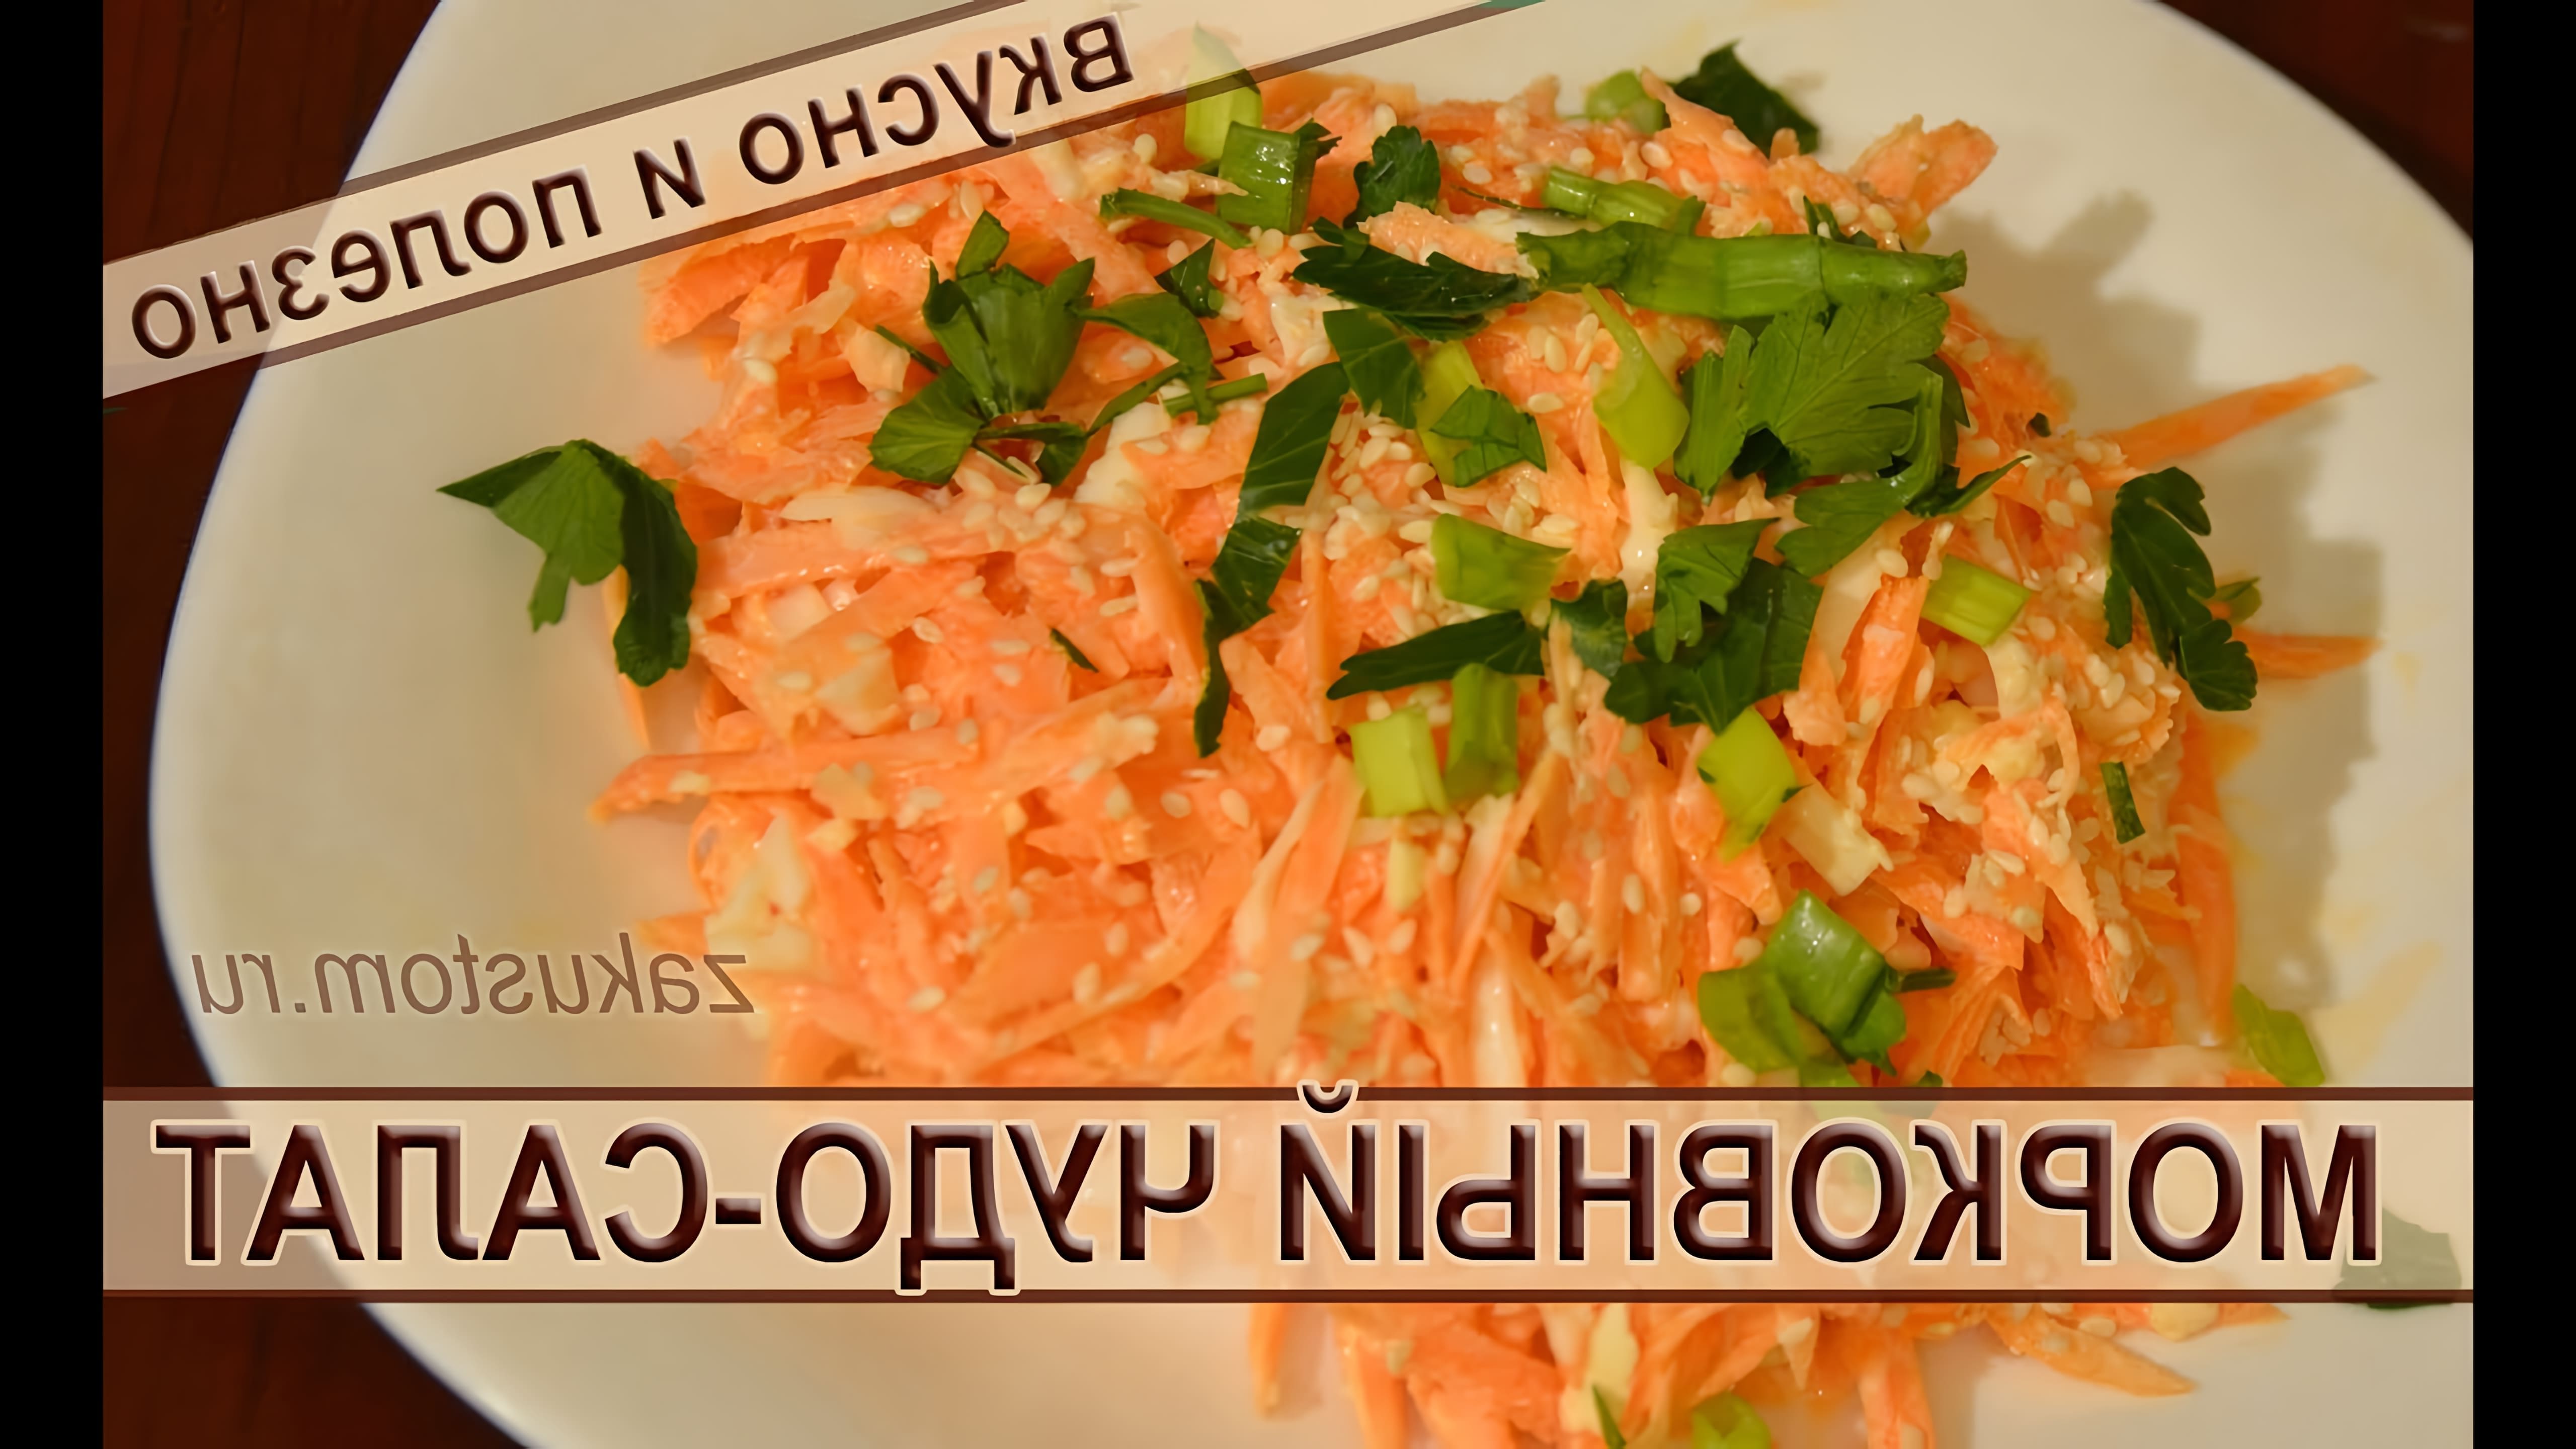 В данном видео демонстрируется рецепт салата из моркови, который является не только вкусным, но и полезным для здоровья